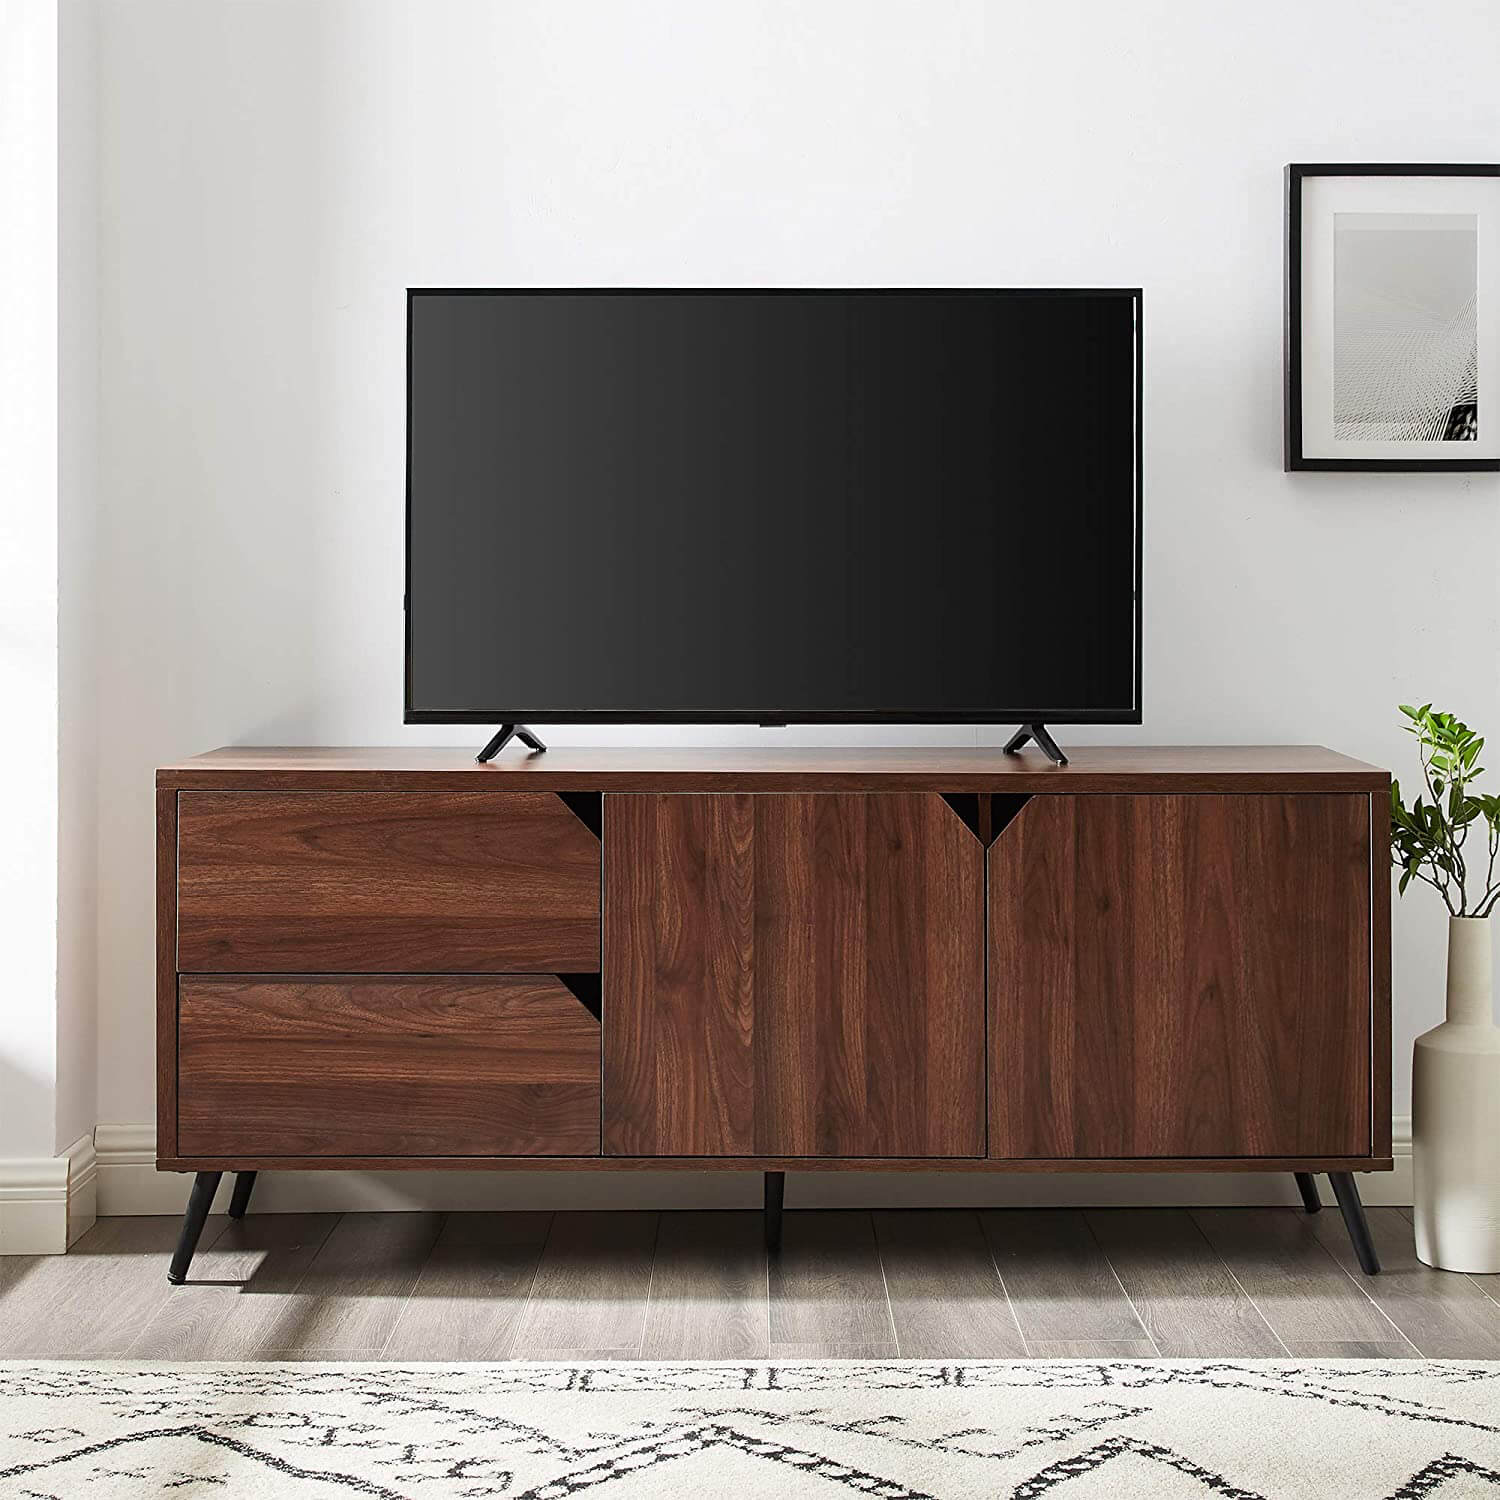 Soporte para TV de madera con gabinetes y cajones para televisores de pantalla plana de hasta 64 pulgadas Consola universal para TV Estantes de almacenamiento para sala de estar Centro de entretenimiento